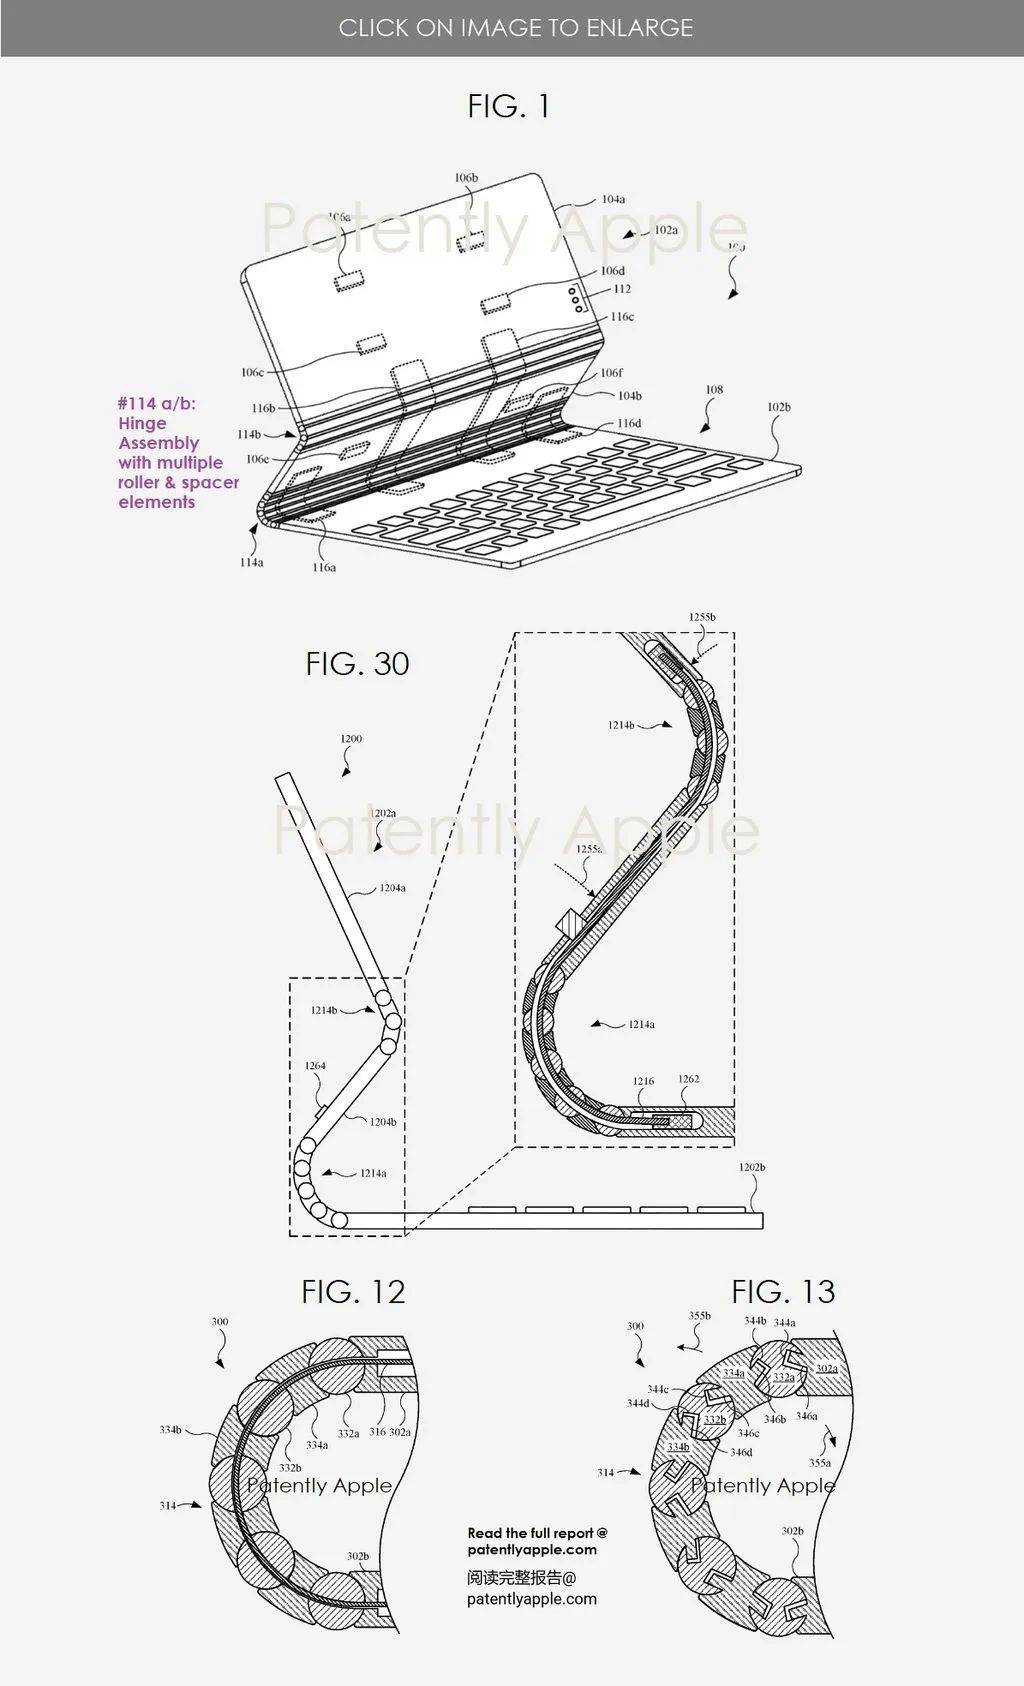 苹果火影忍者组件桌面版:新款HomePod依旧会弄脏桌面|妙控键盘新专利曝光-第4张图片-太平洋在线下载